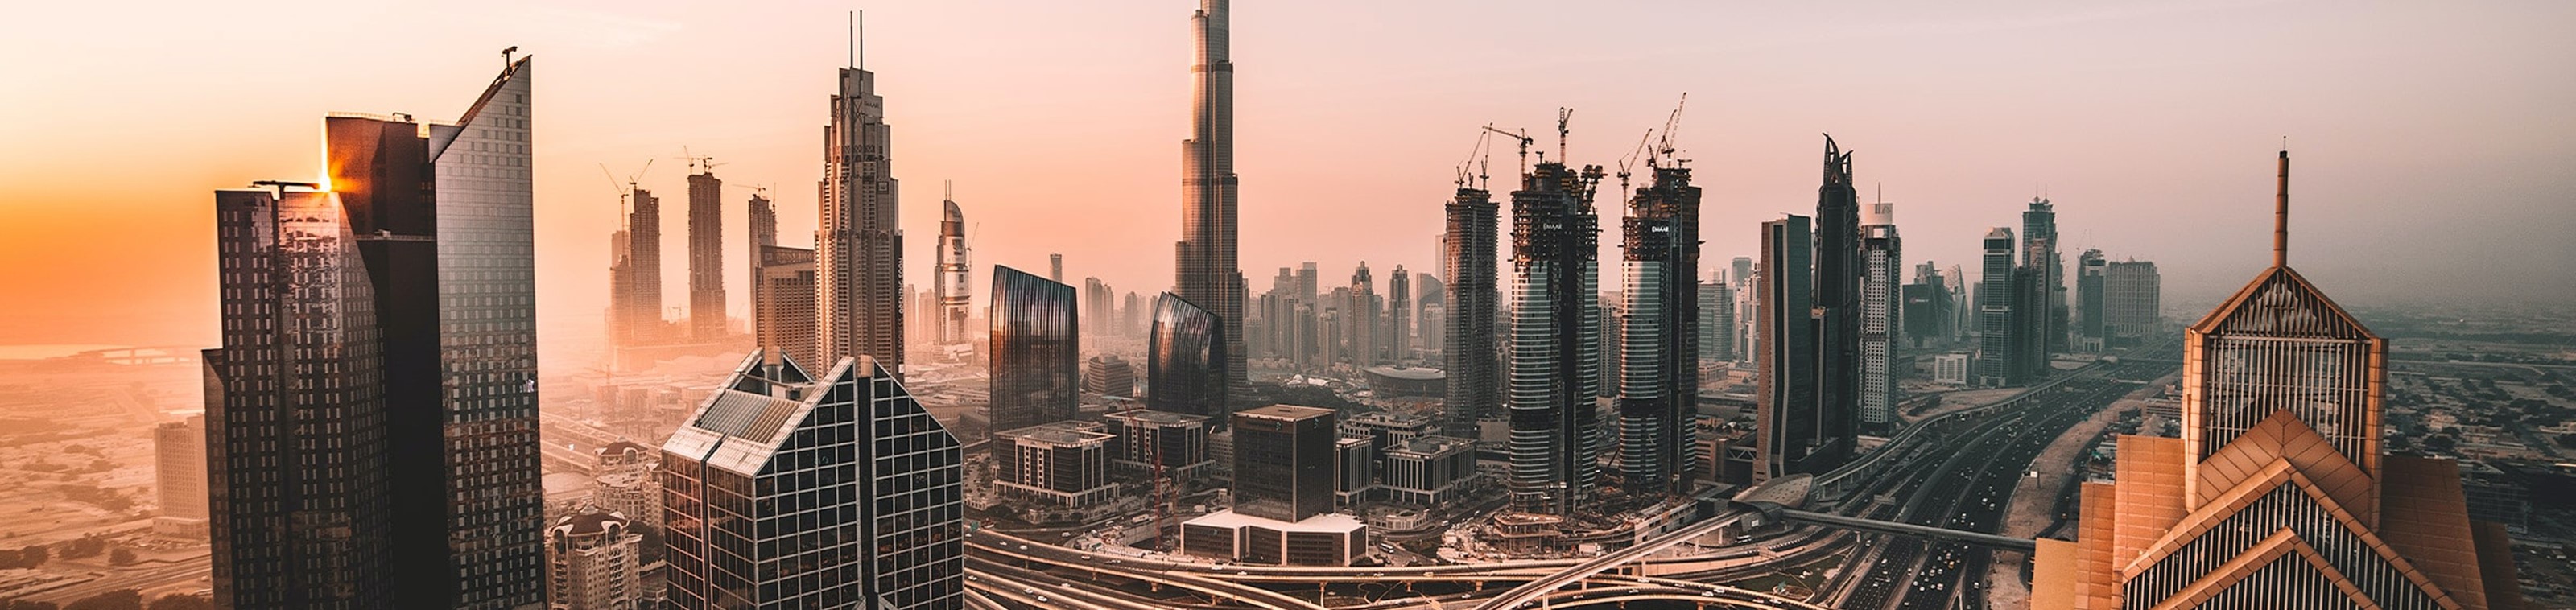 Wereldexpo & citylife in Dubai